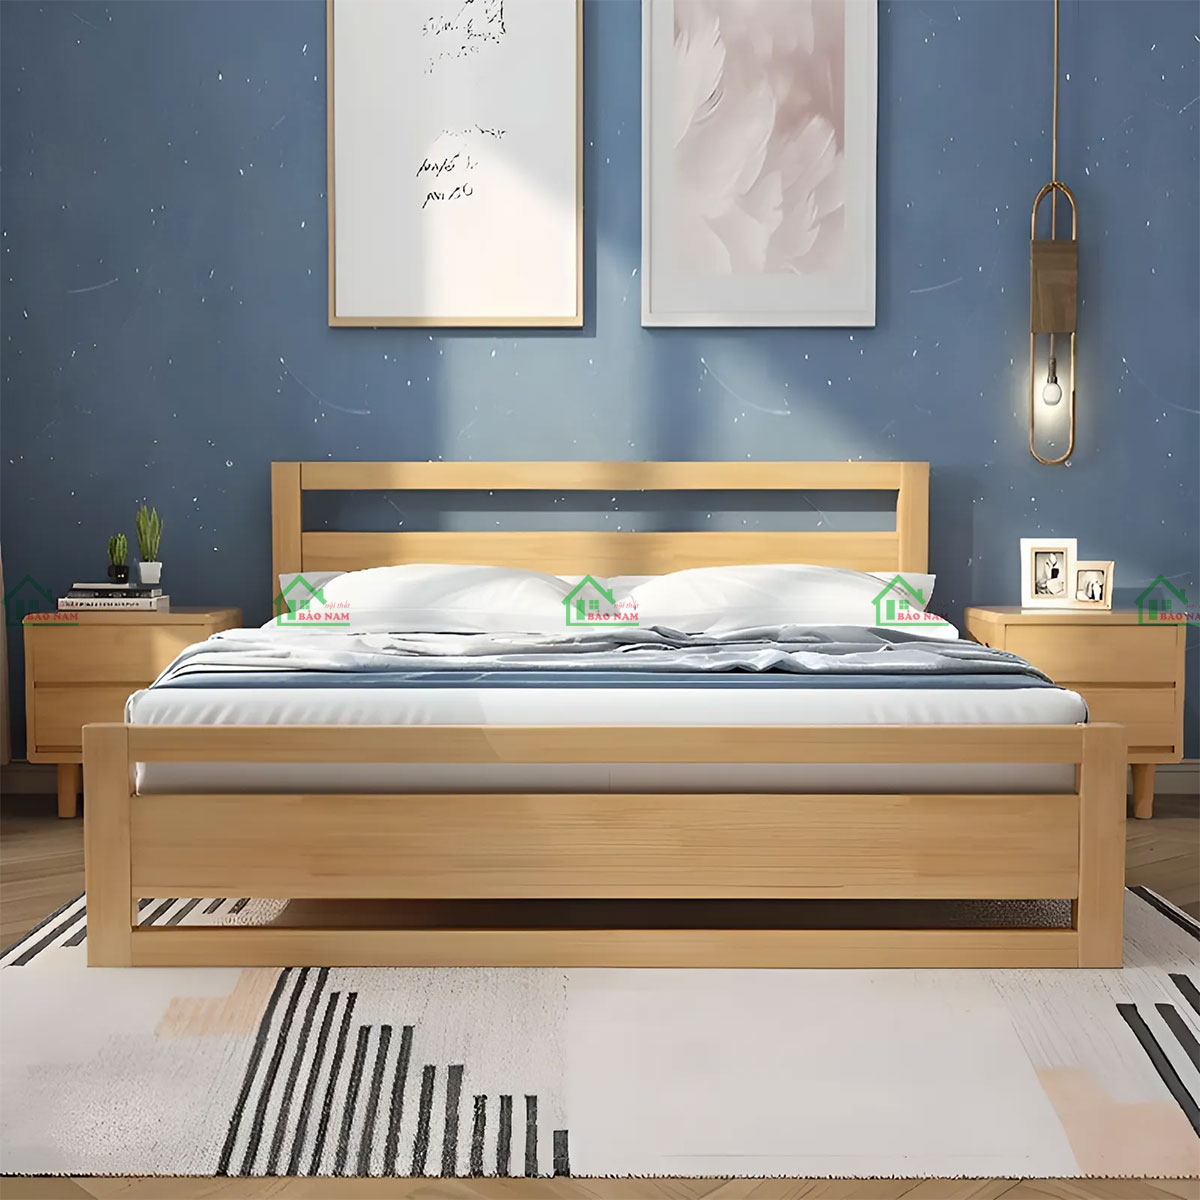 Giường ngủ gỗ tự nhiên là gì?